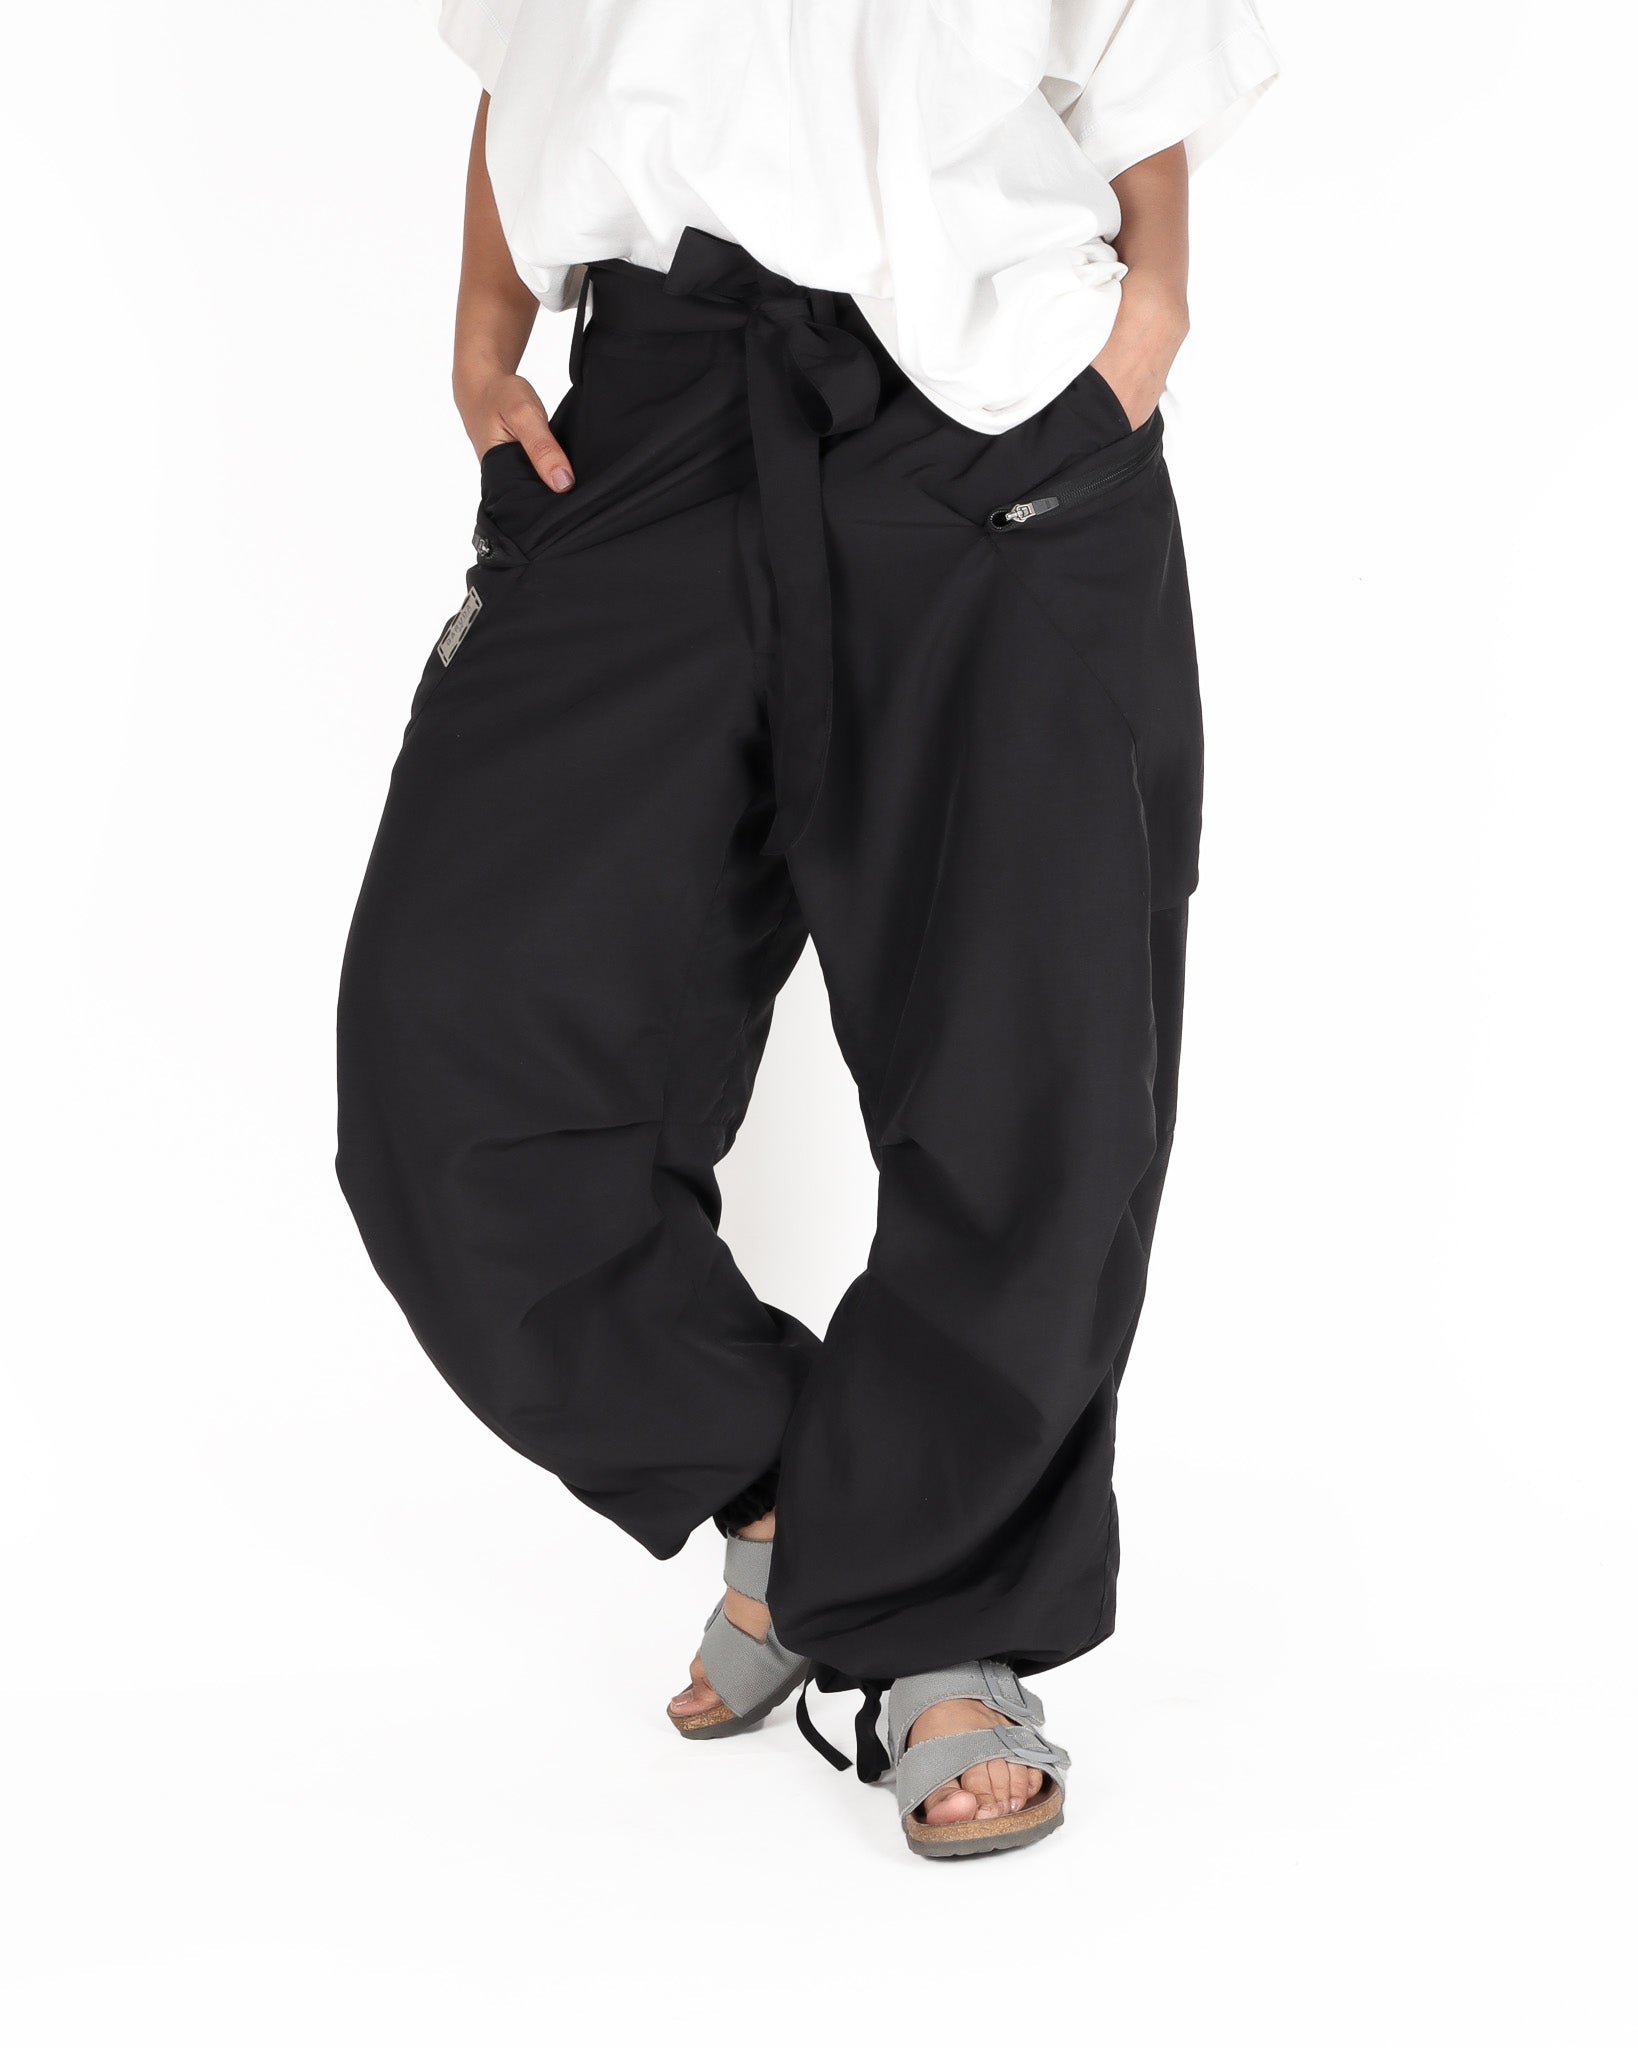 Parachute pants - Cool Grey Parachute Pants 2.0 for women